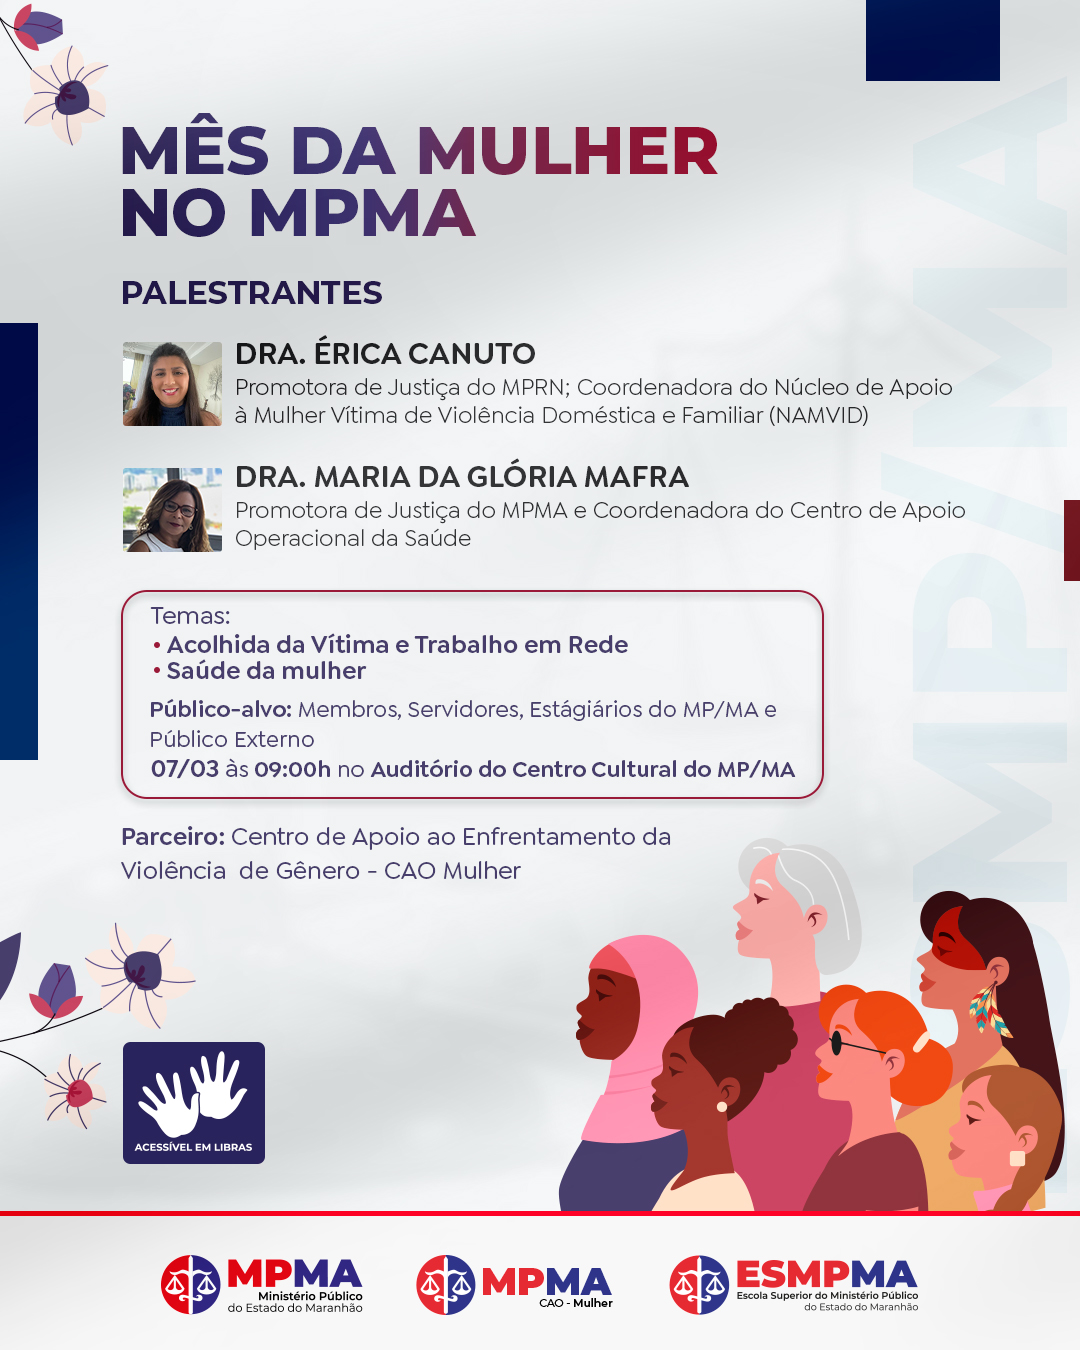 Mês da Mulher no MPMA - Acolhida da vítima e trabalho em rede 